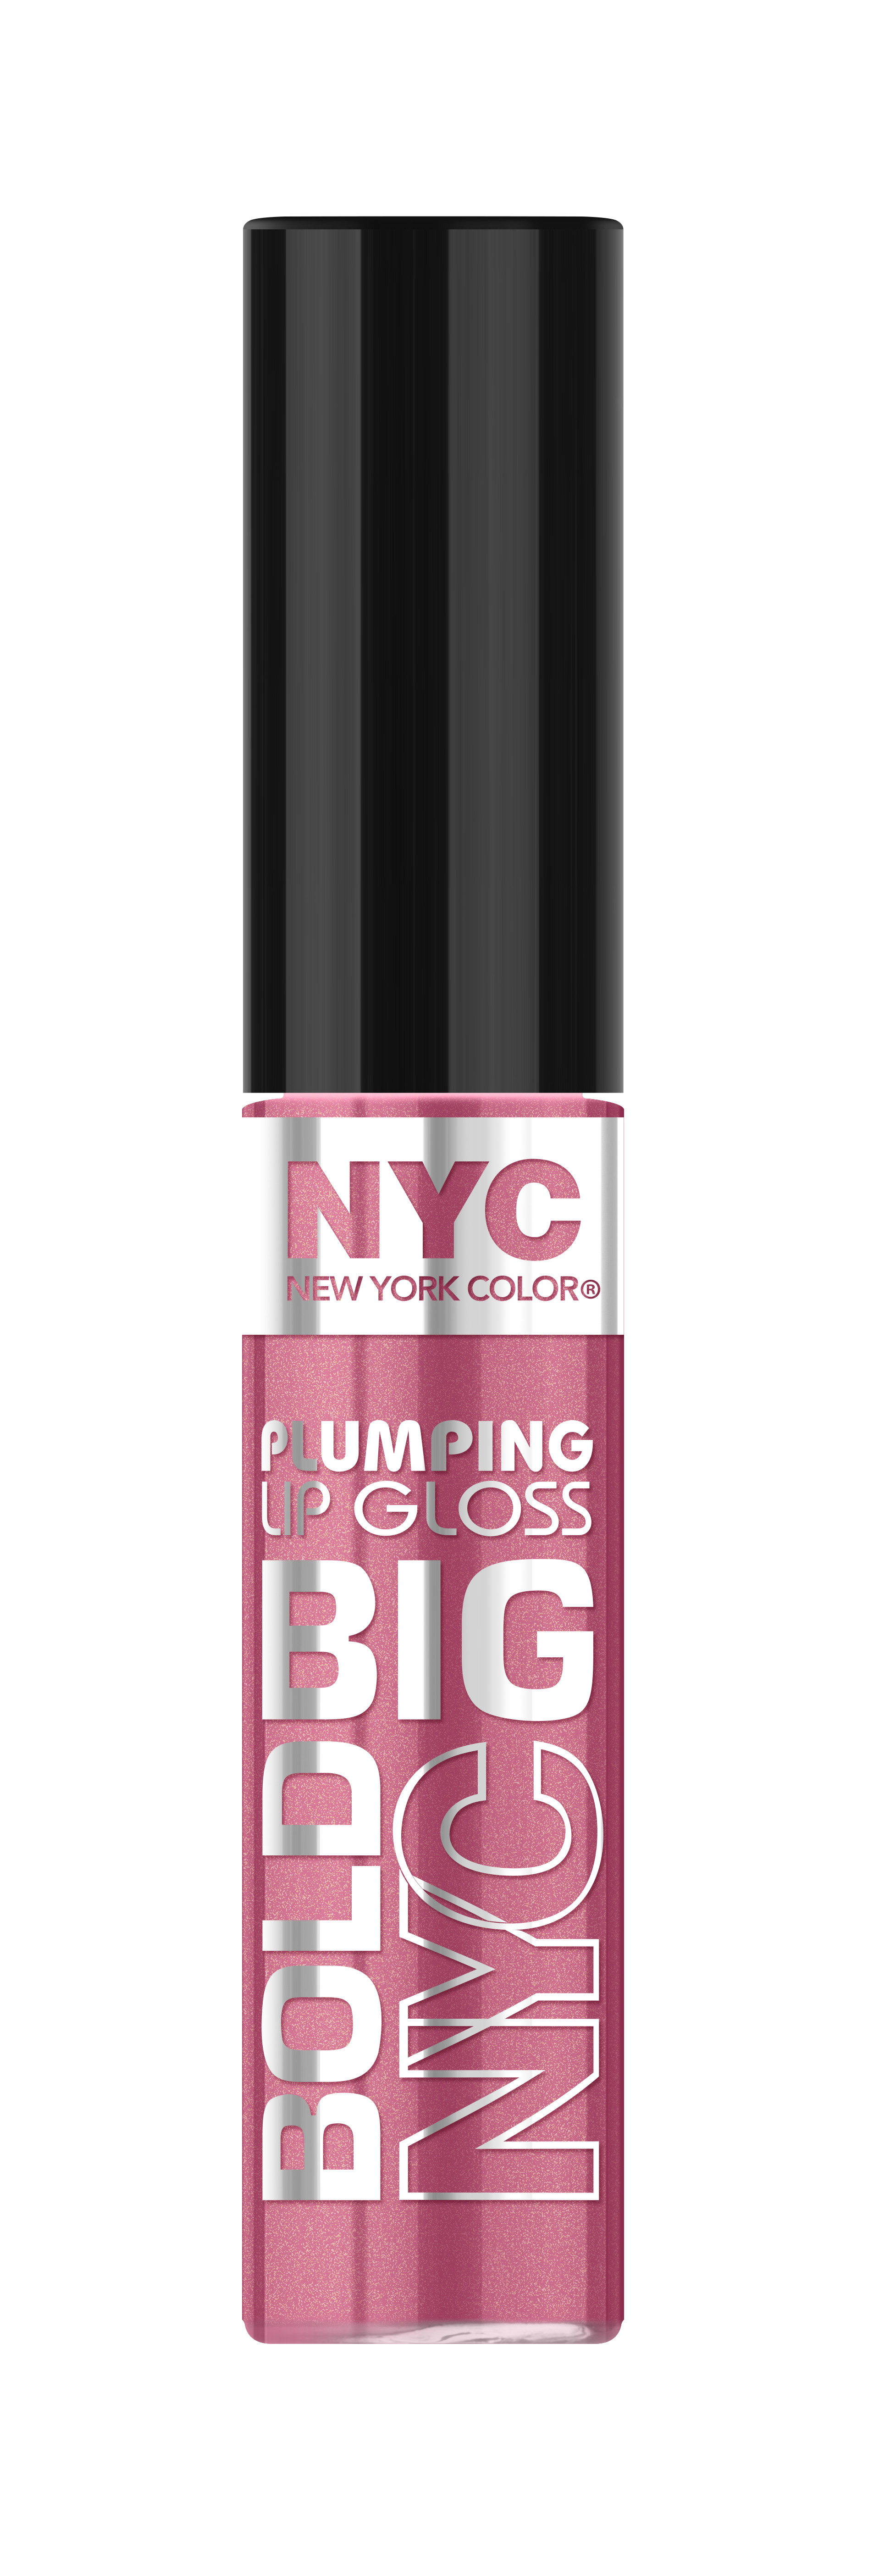 New York Color Big Bold Plumping and Shine Lip Gloss